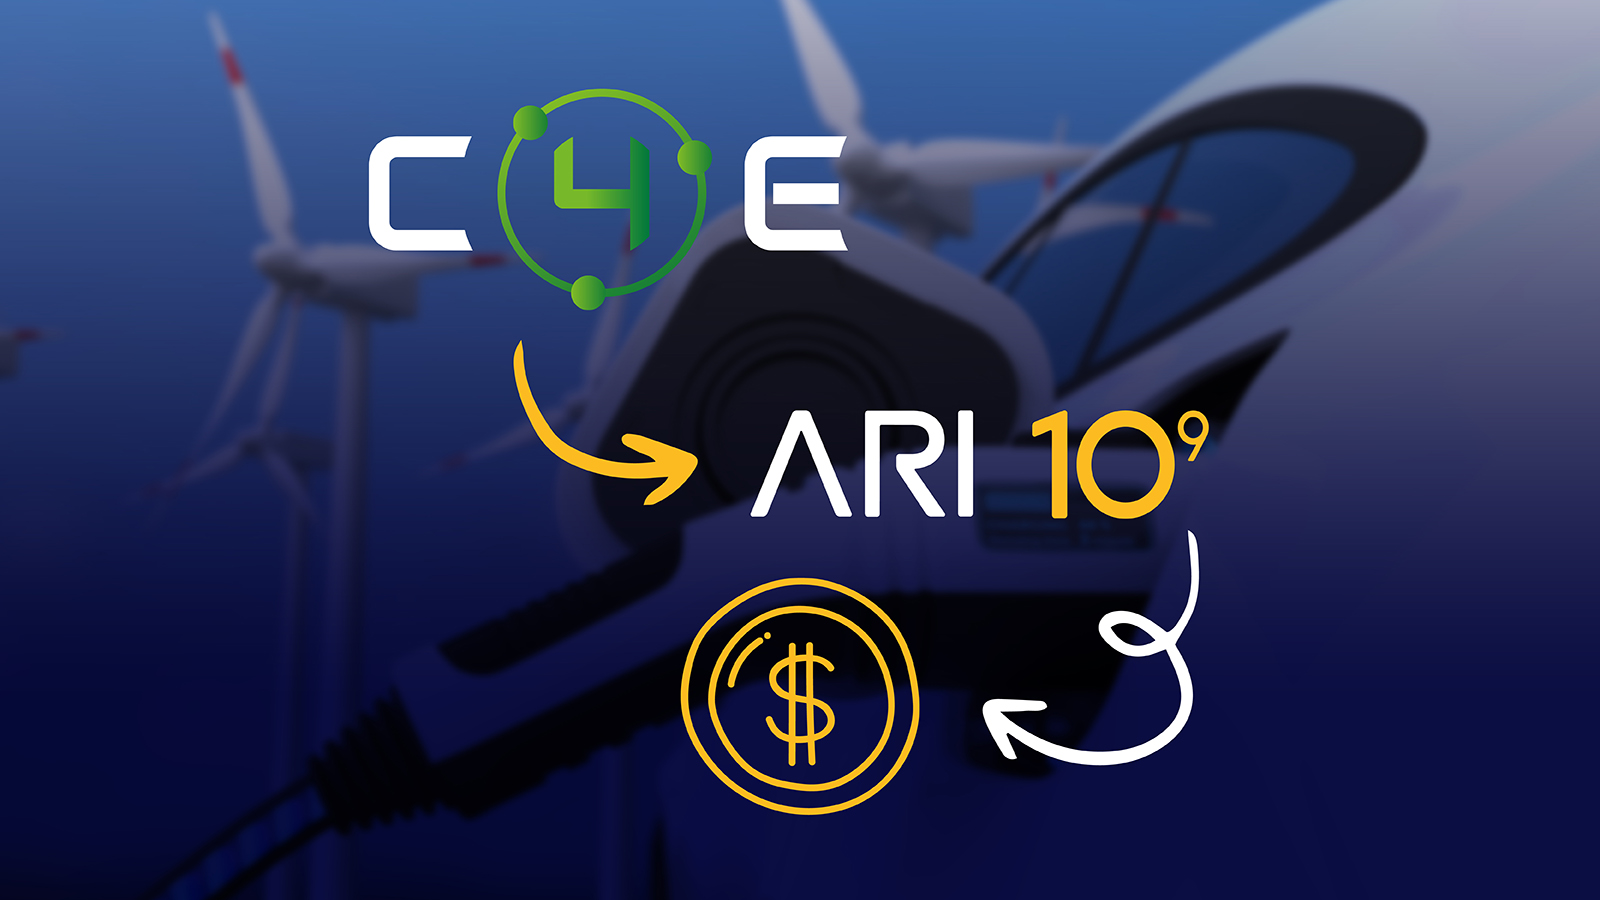 Ari10 Gateway wesprze Chain4Energy w zbiórce, szykuje się airdrop!